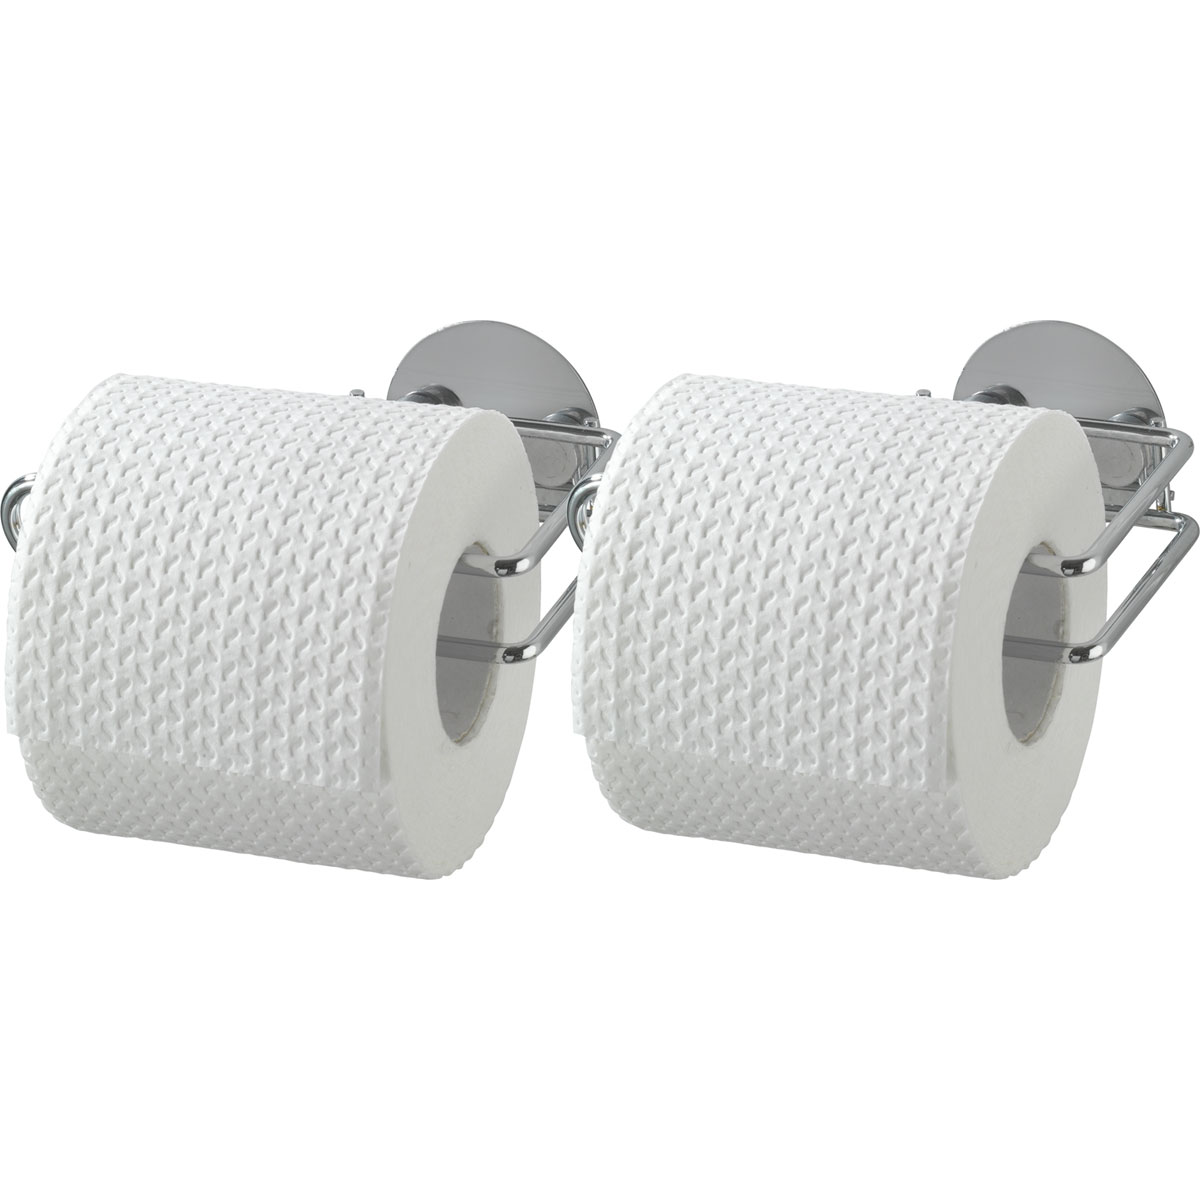 Wenko Turbo-Loc Toilettenpapierrollenhalter 2er Set | Befestigen 514876 bohren ohne